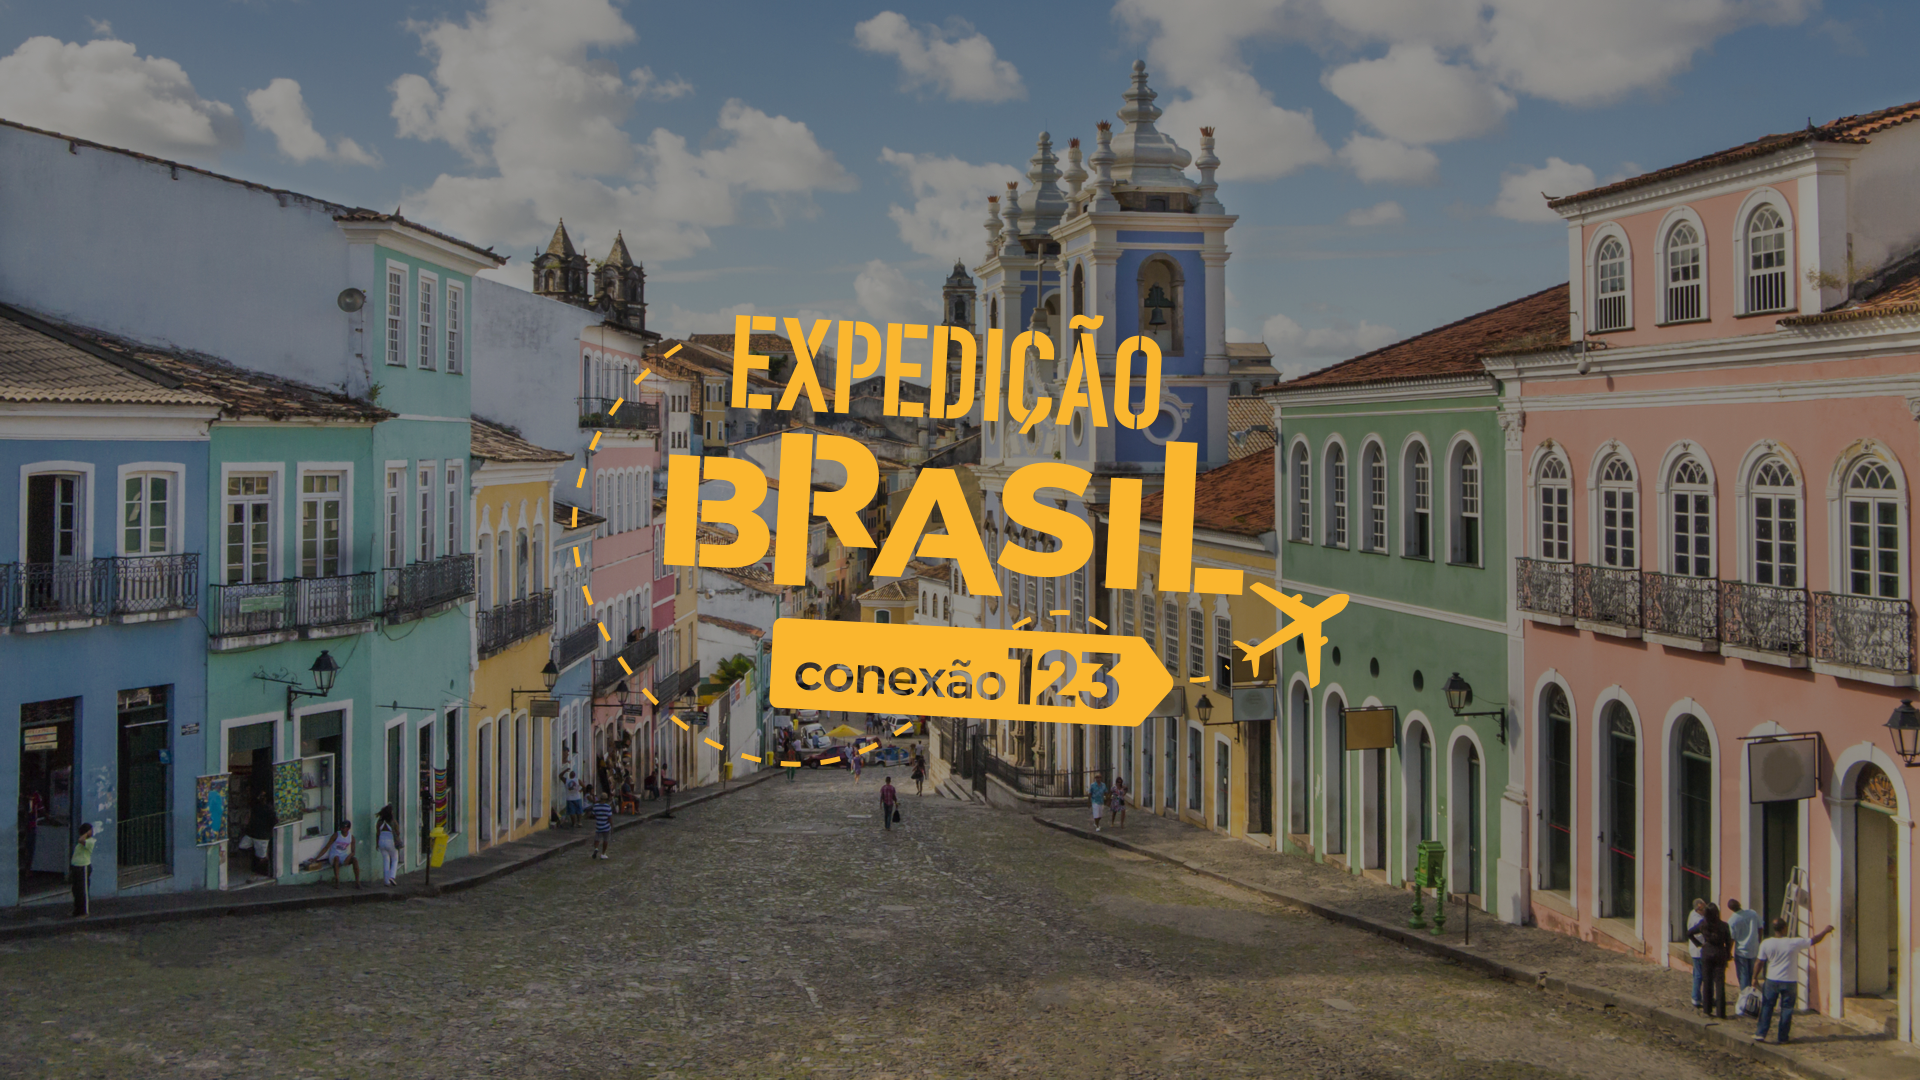 O que fazer em Salvador: conheça o Pelourinho e a Igreja Nosso Senhor do Bonfim com o Conexão123 – Expedição Brasil